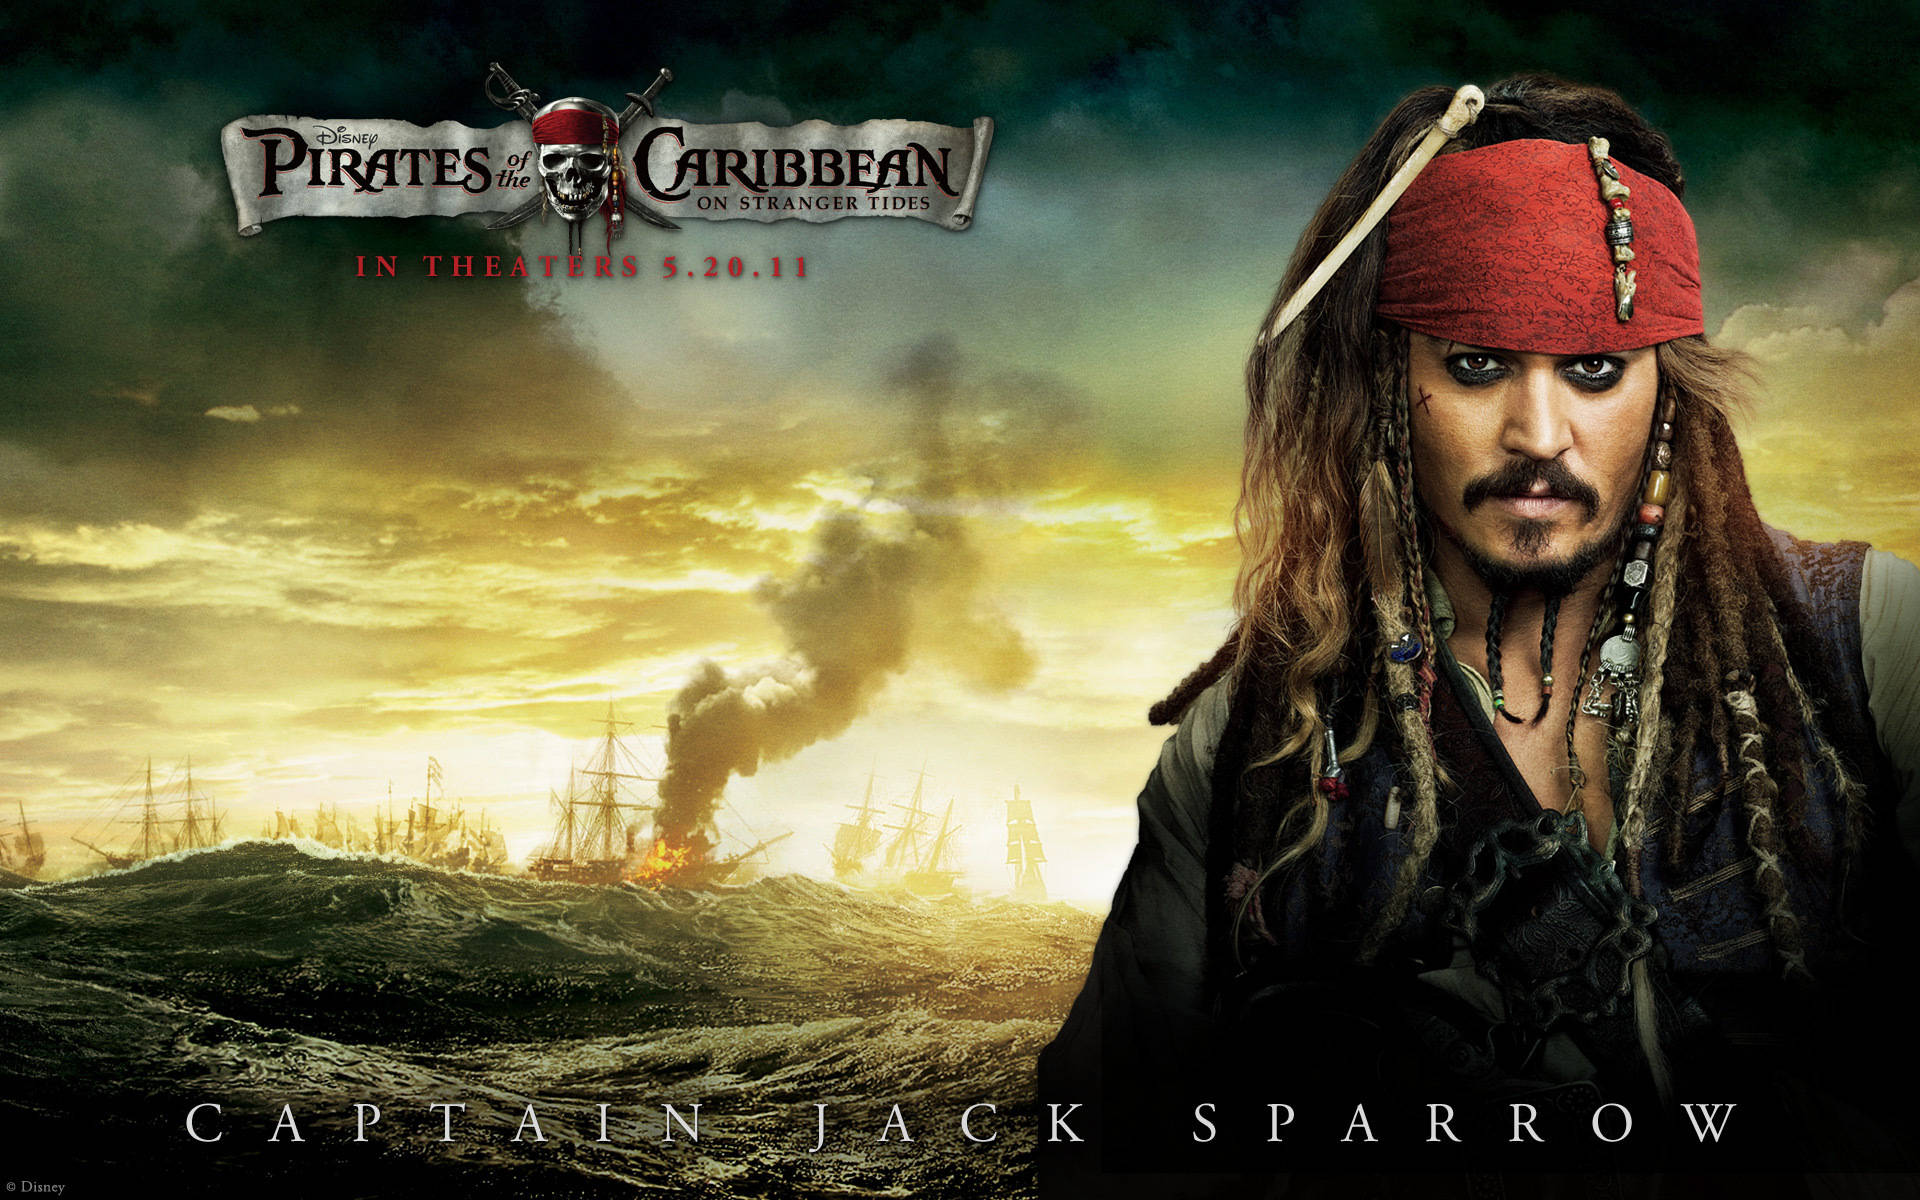 Jack Sparrow Stranger Tides Poster Background